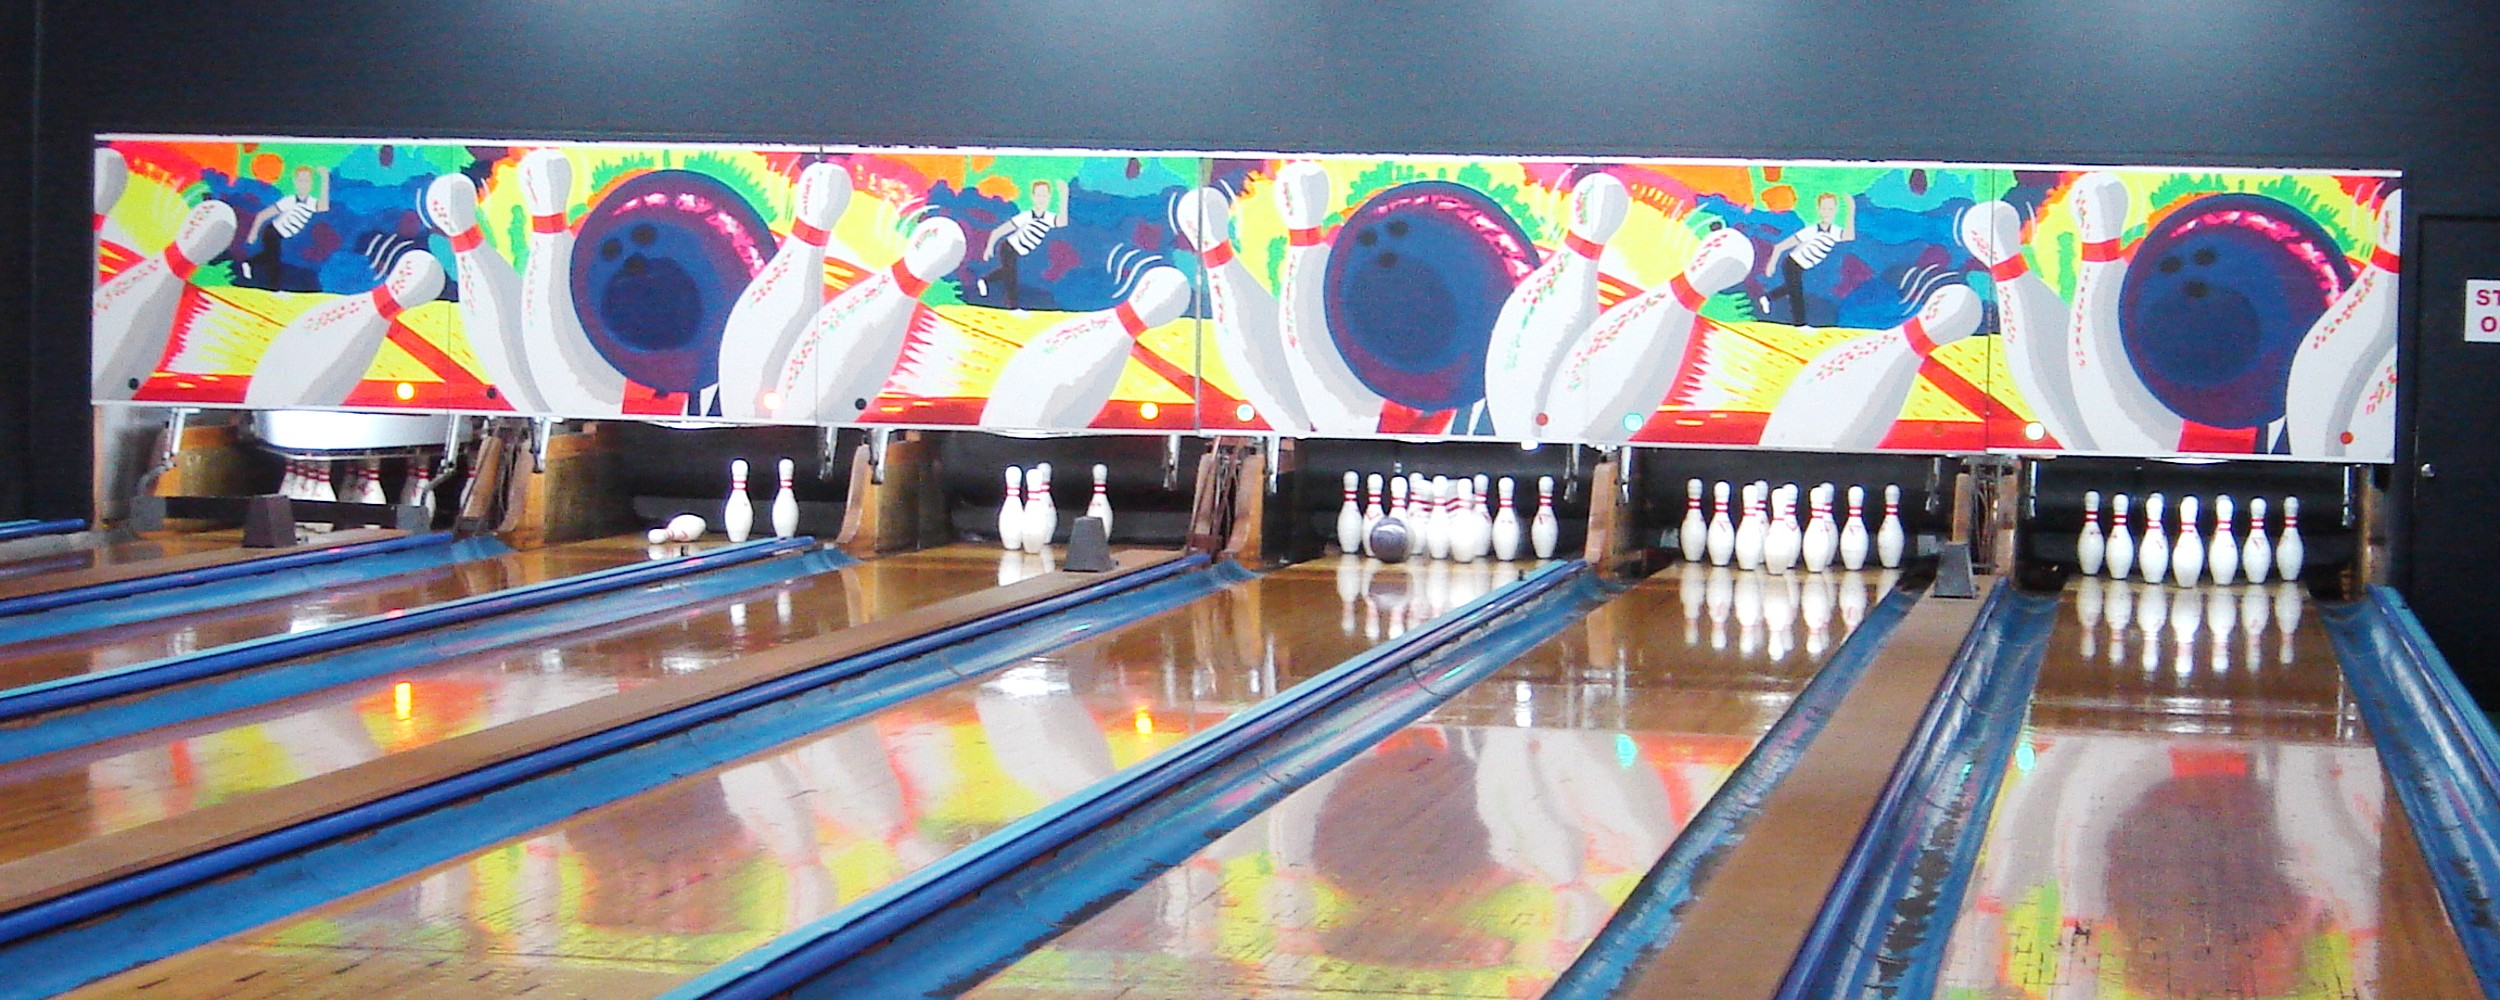 armidale bowling alley 1